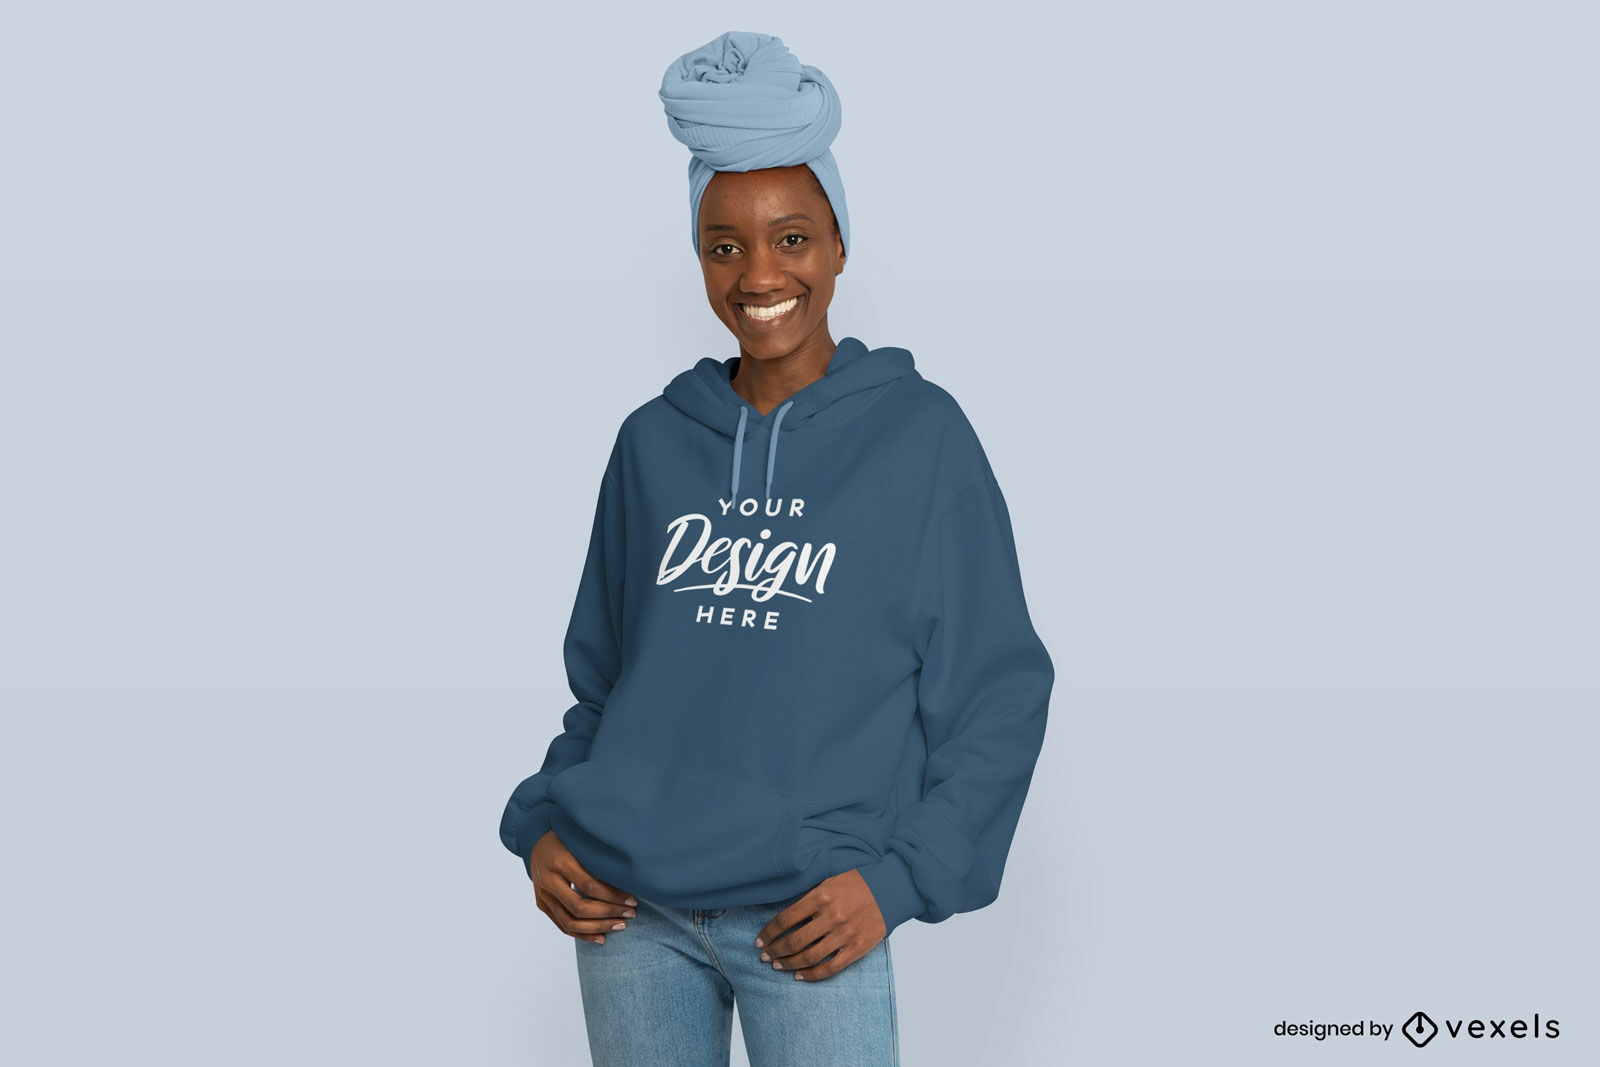 Black girl smiling in hoodie mockup